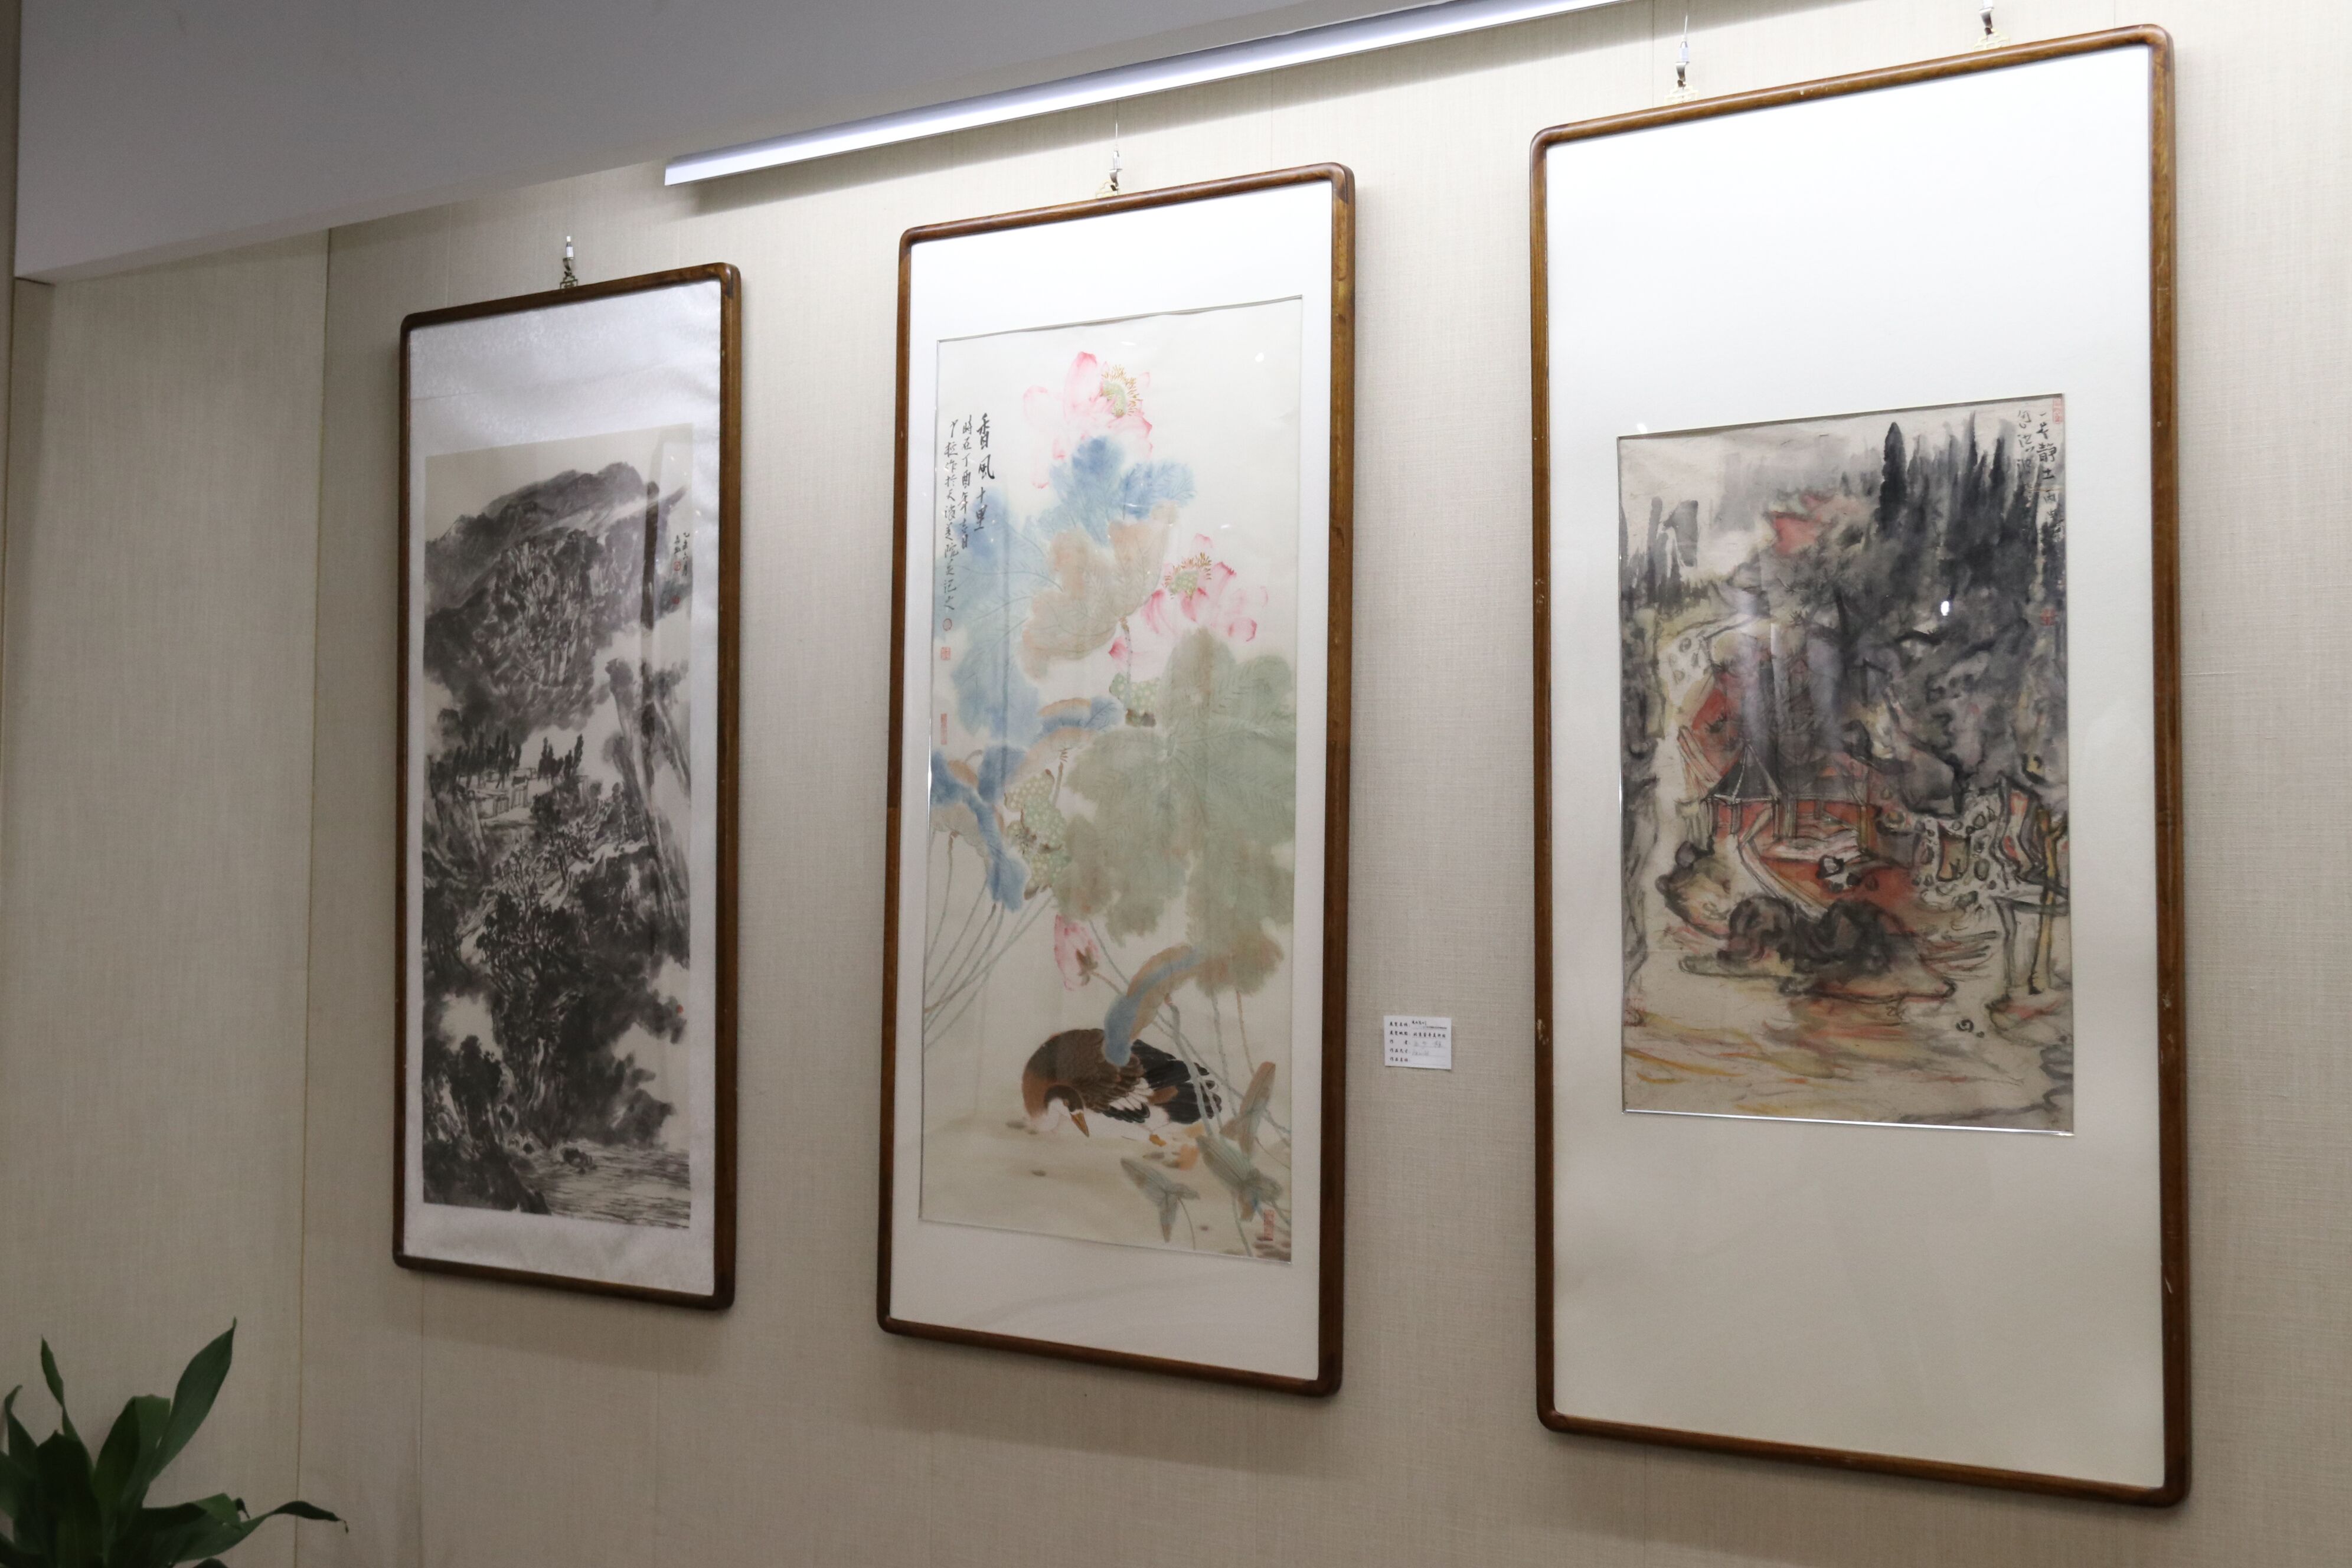 2017年中国画名家邀请展在睿奇美术馆隆重开幕